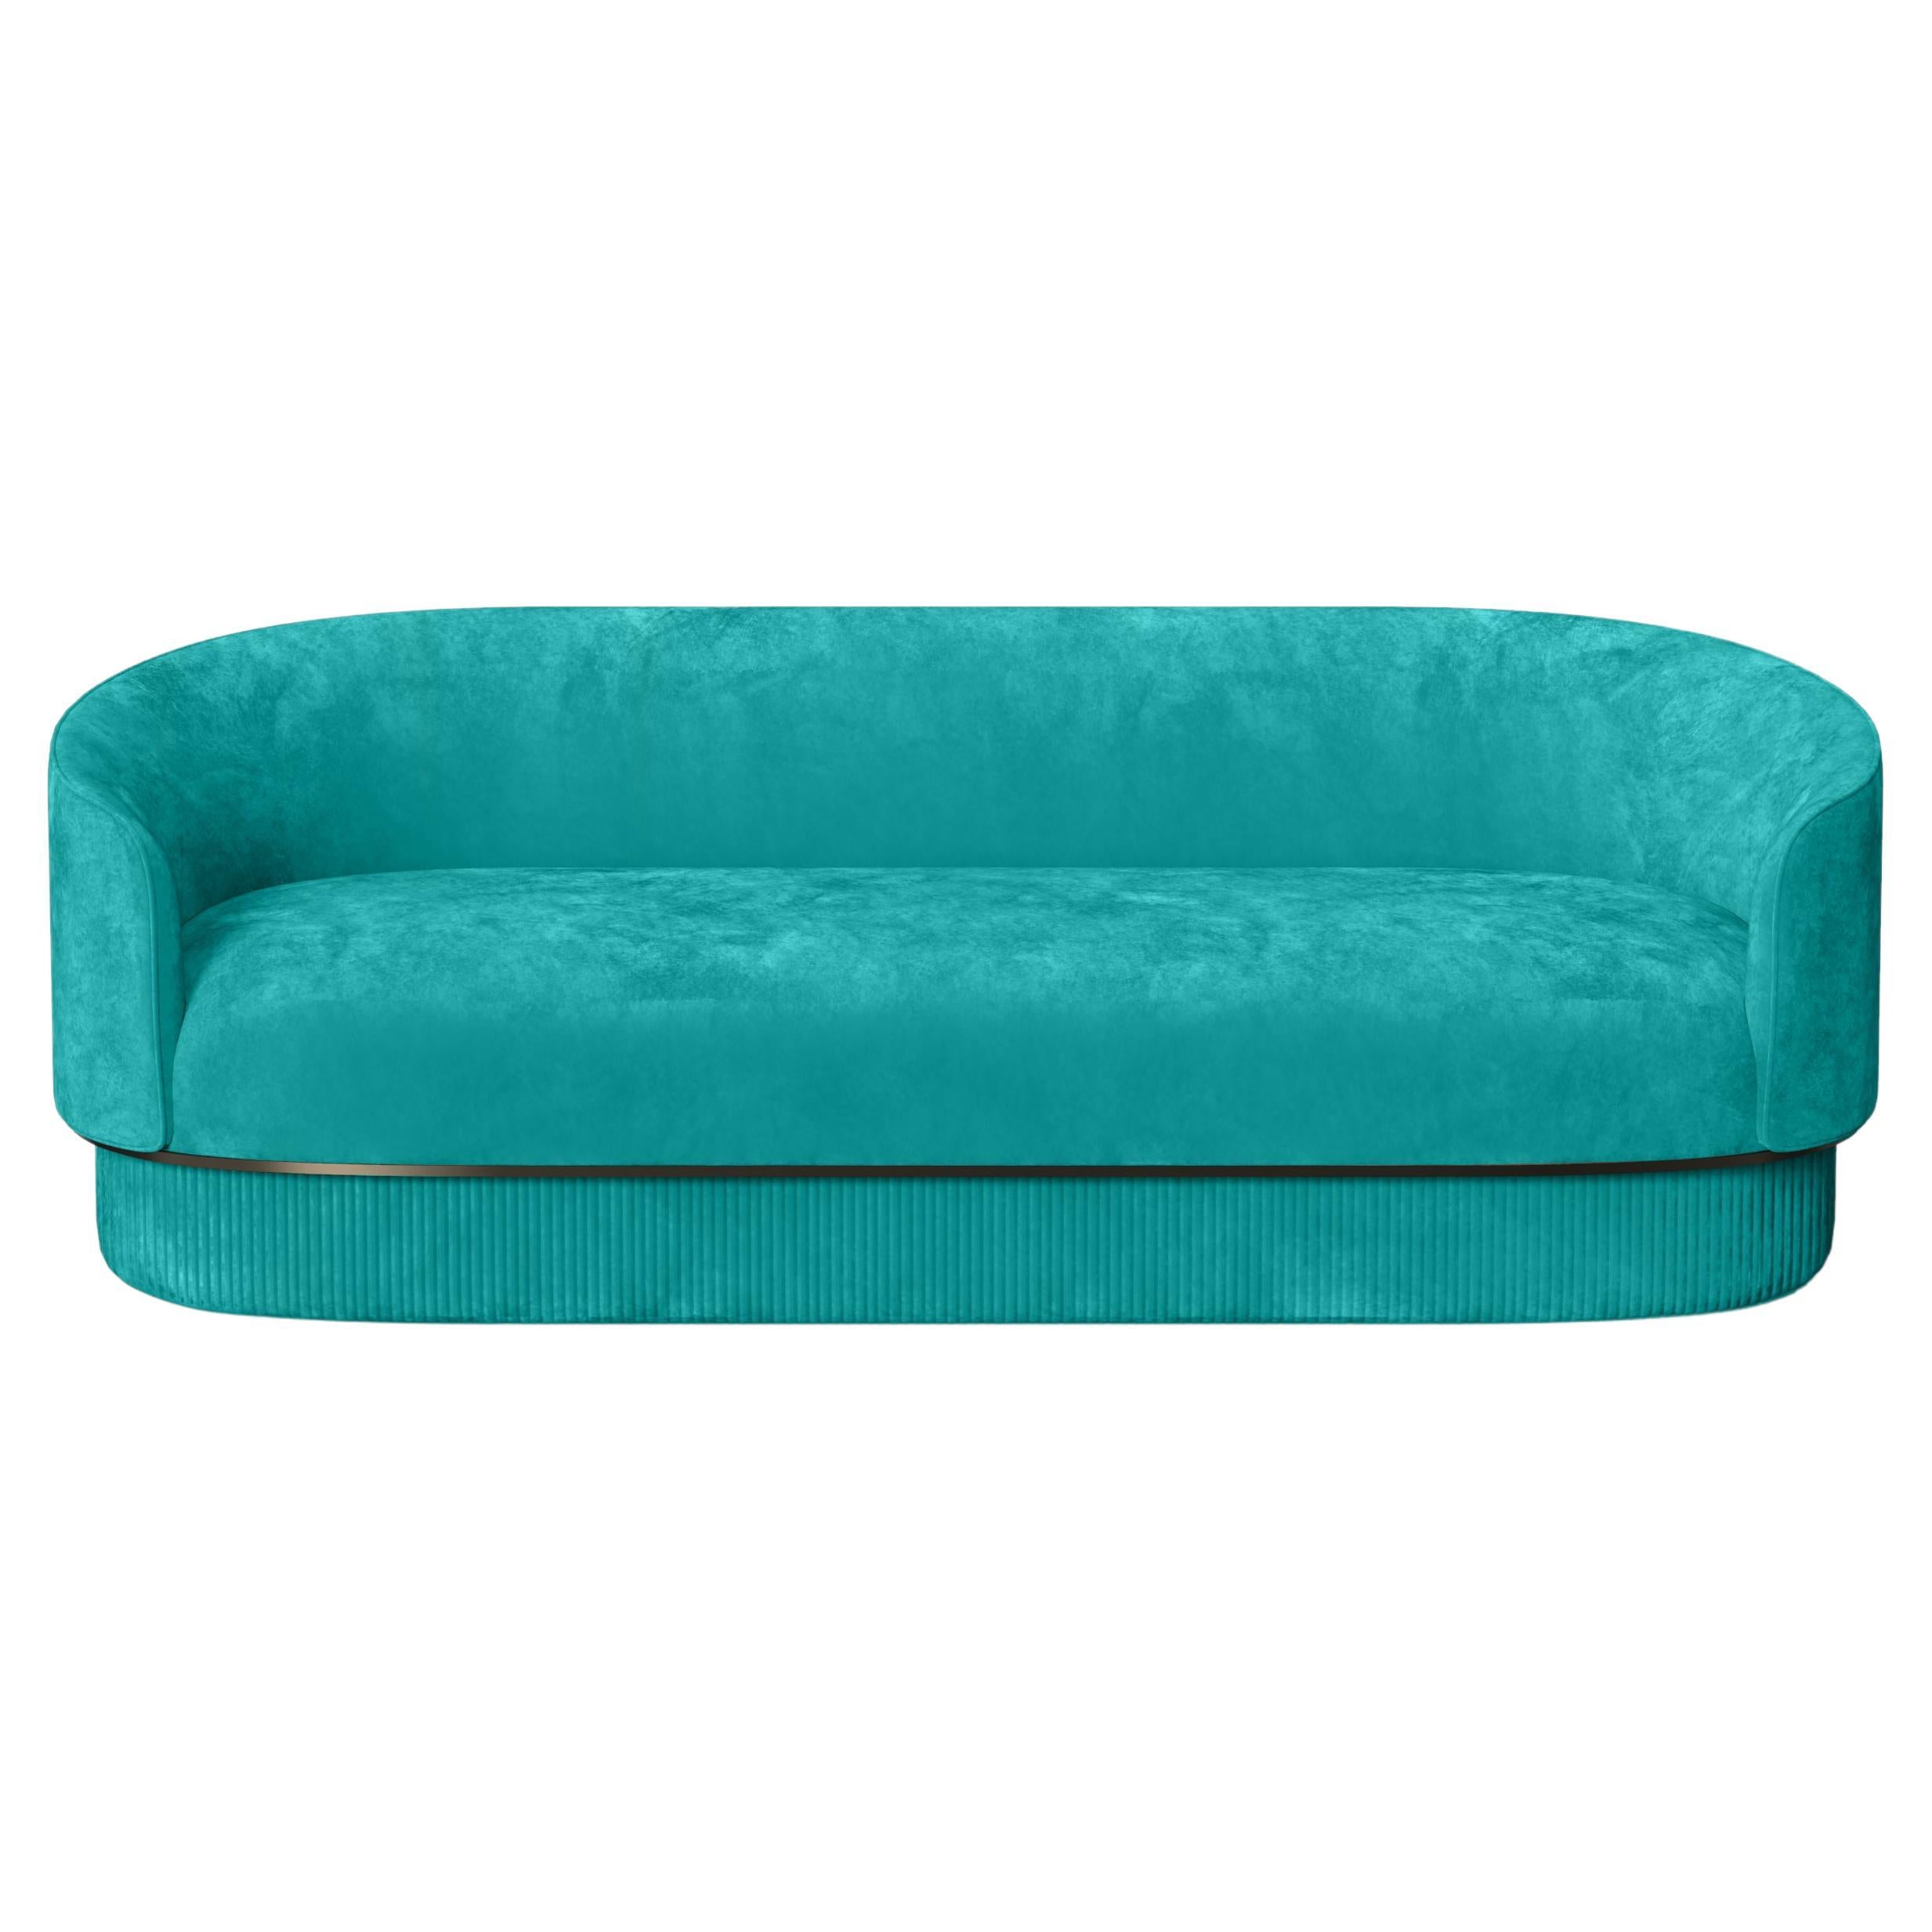 Modernes Gentle Sofa in Teal aus Samt und Bronzemetall